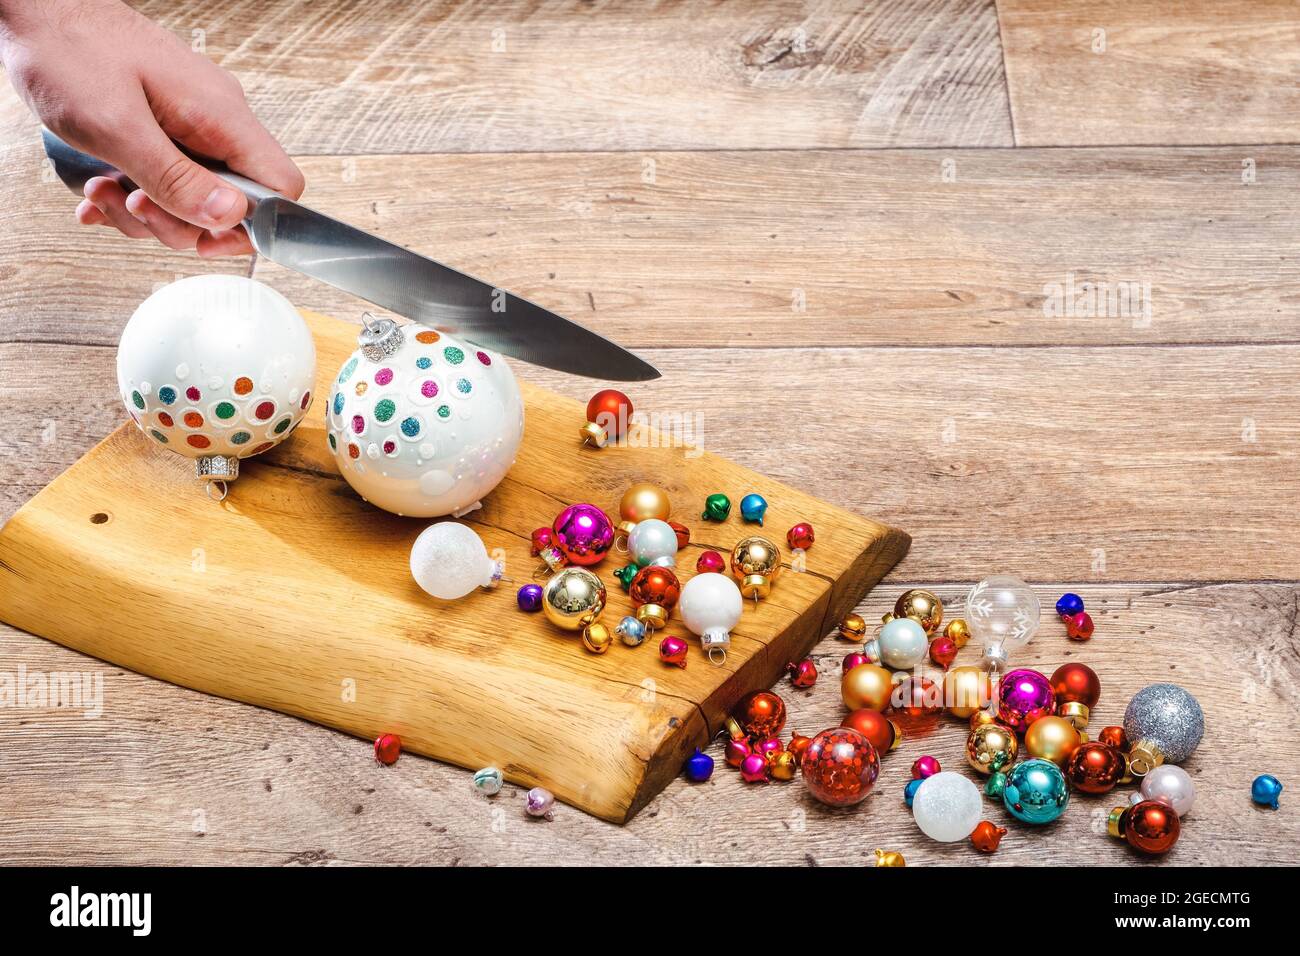 la main humaine grind des boules de noël au couteau sur une surface en bois. Cuisiner ou préparer Noël, photo conceptuelle. Photo horizontale avec espace de copie Banque D'Images